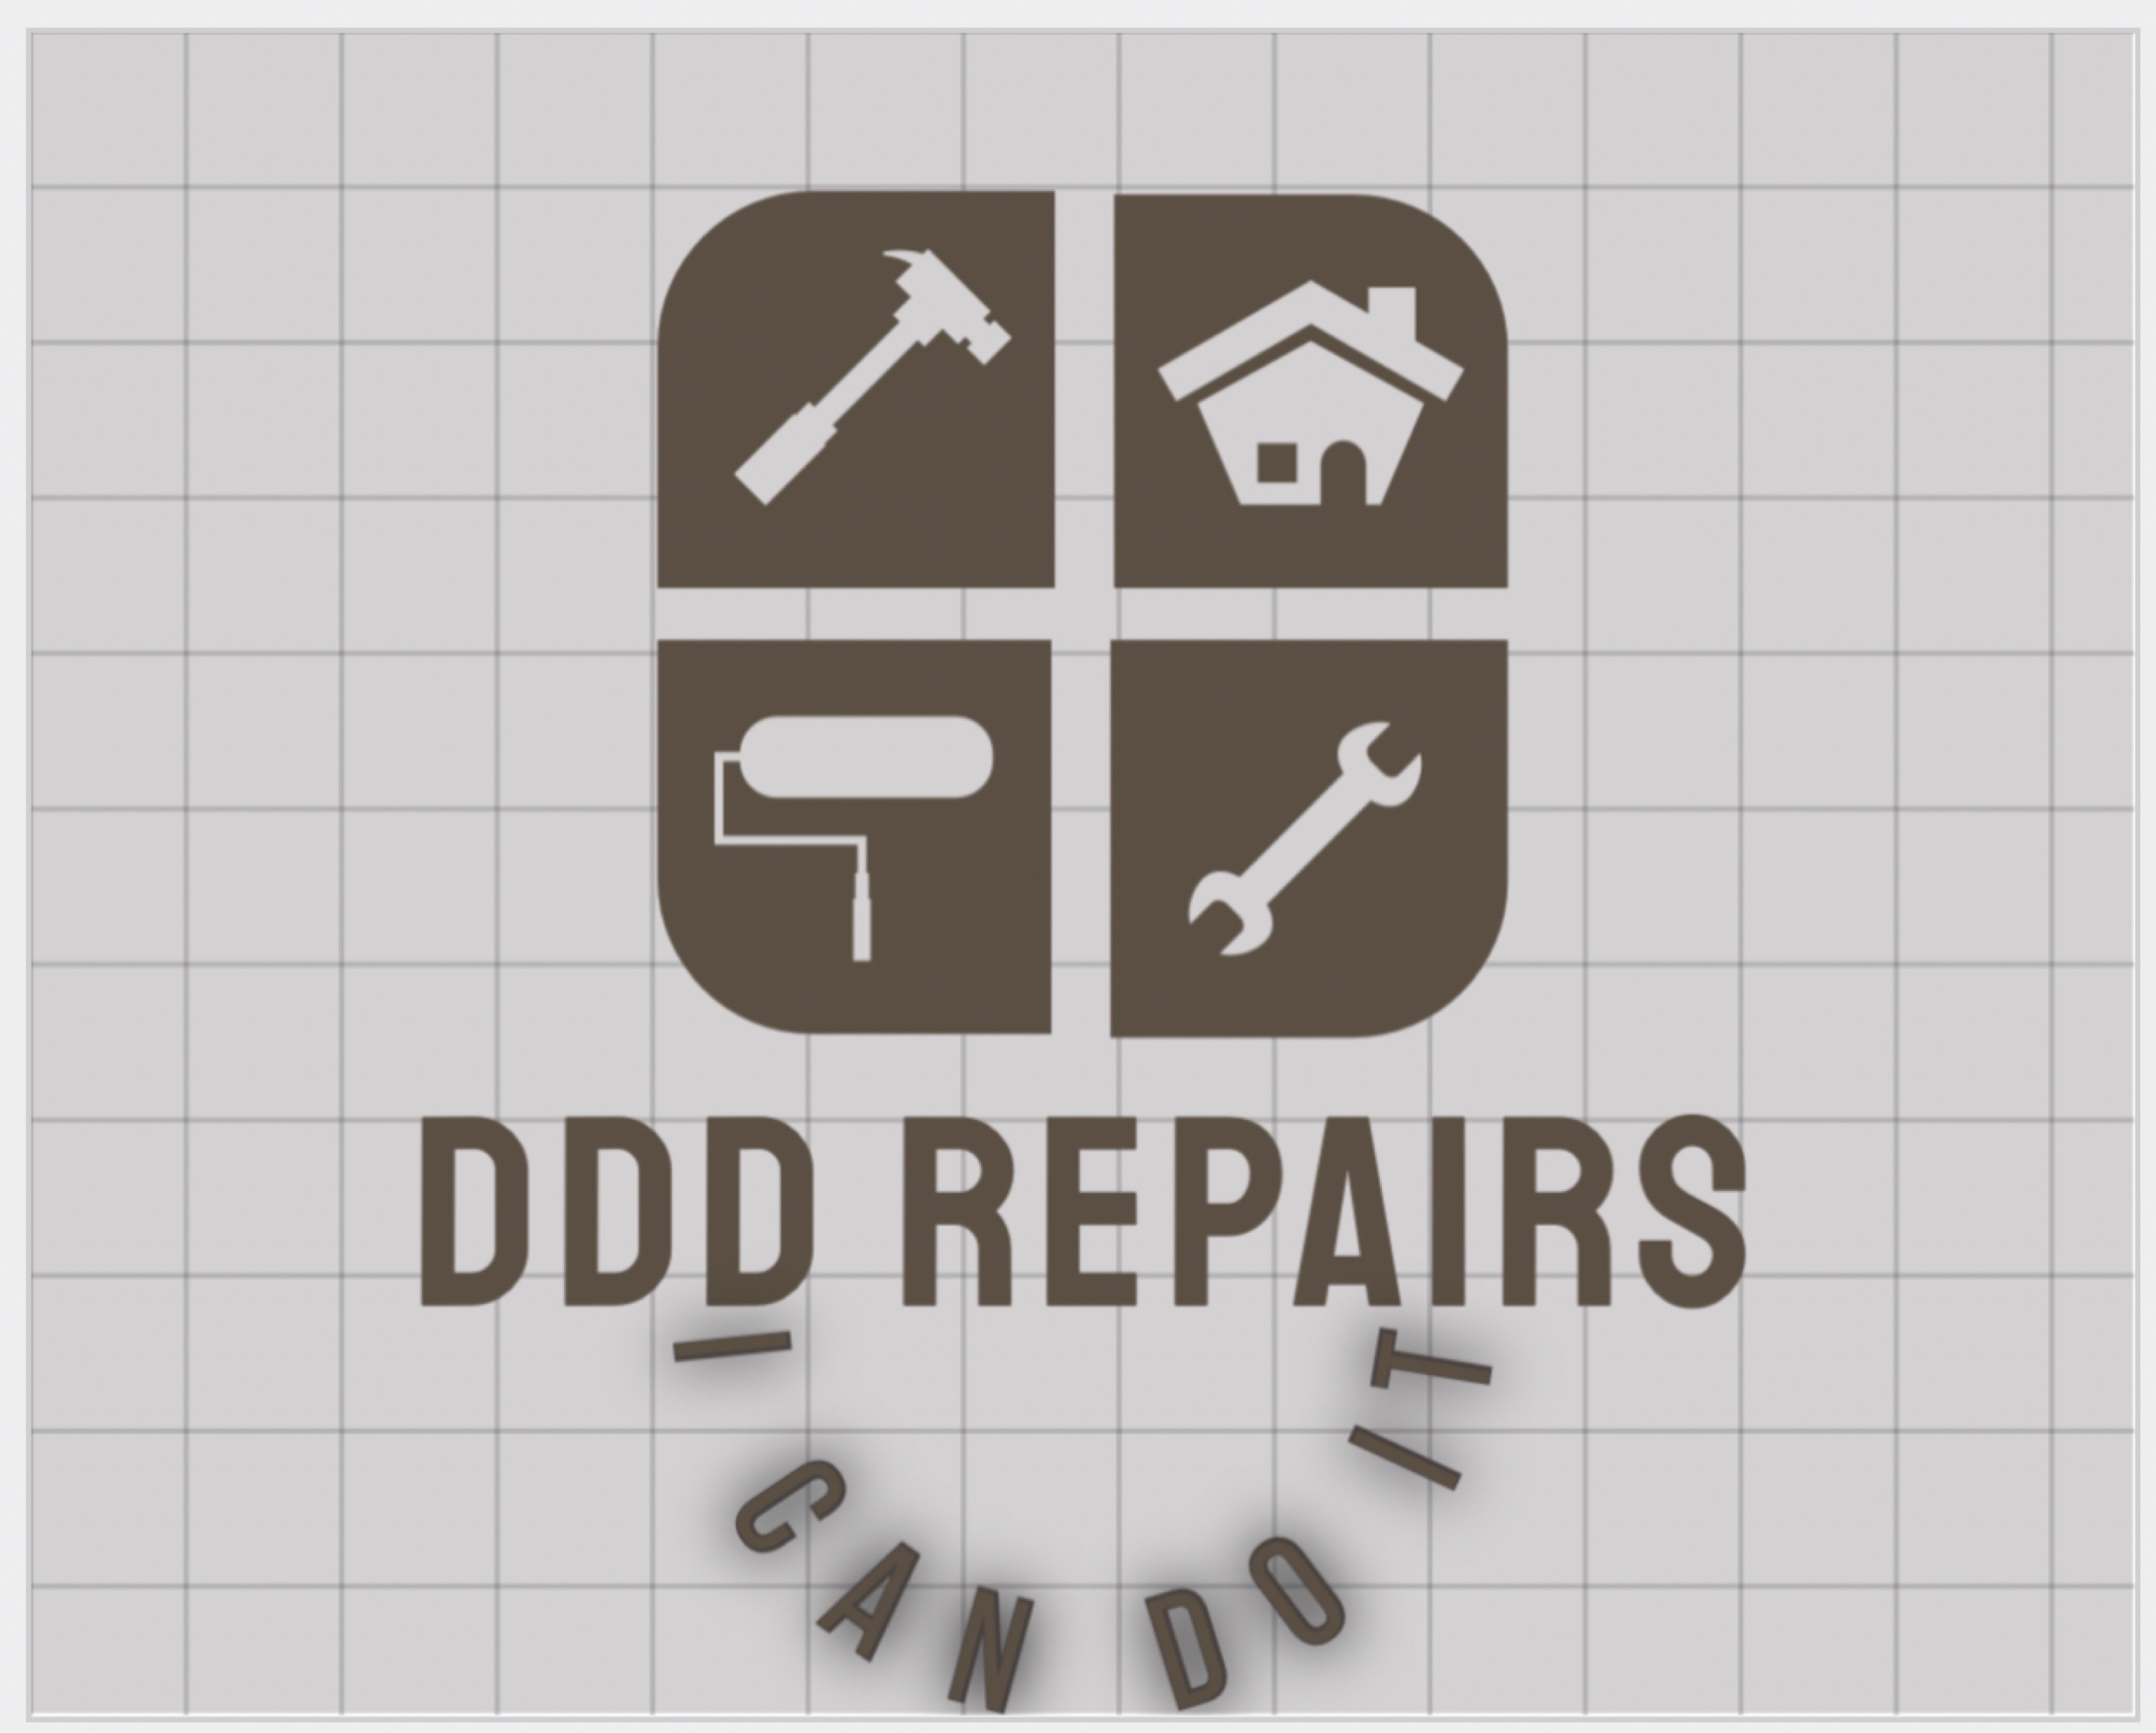 DDD REPAIRS LLC Logo